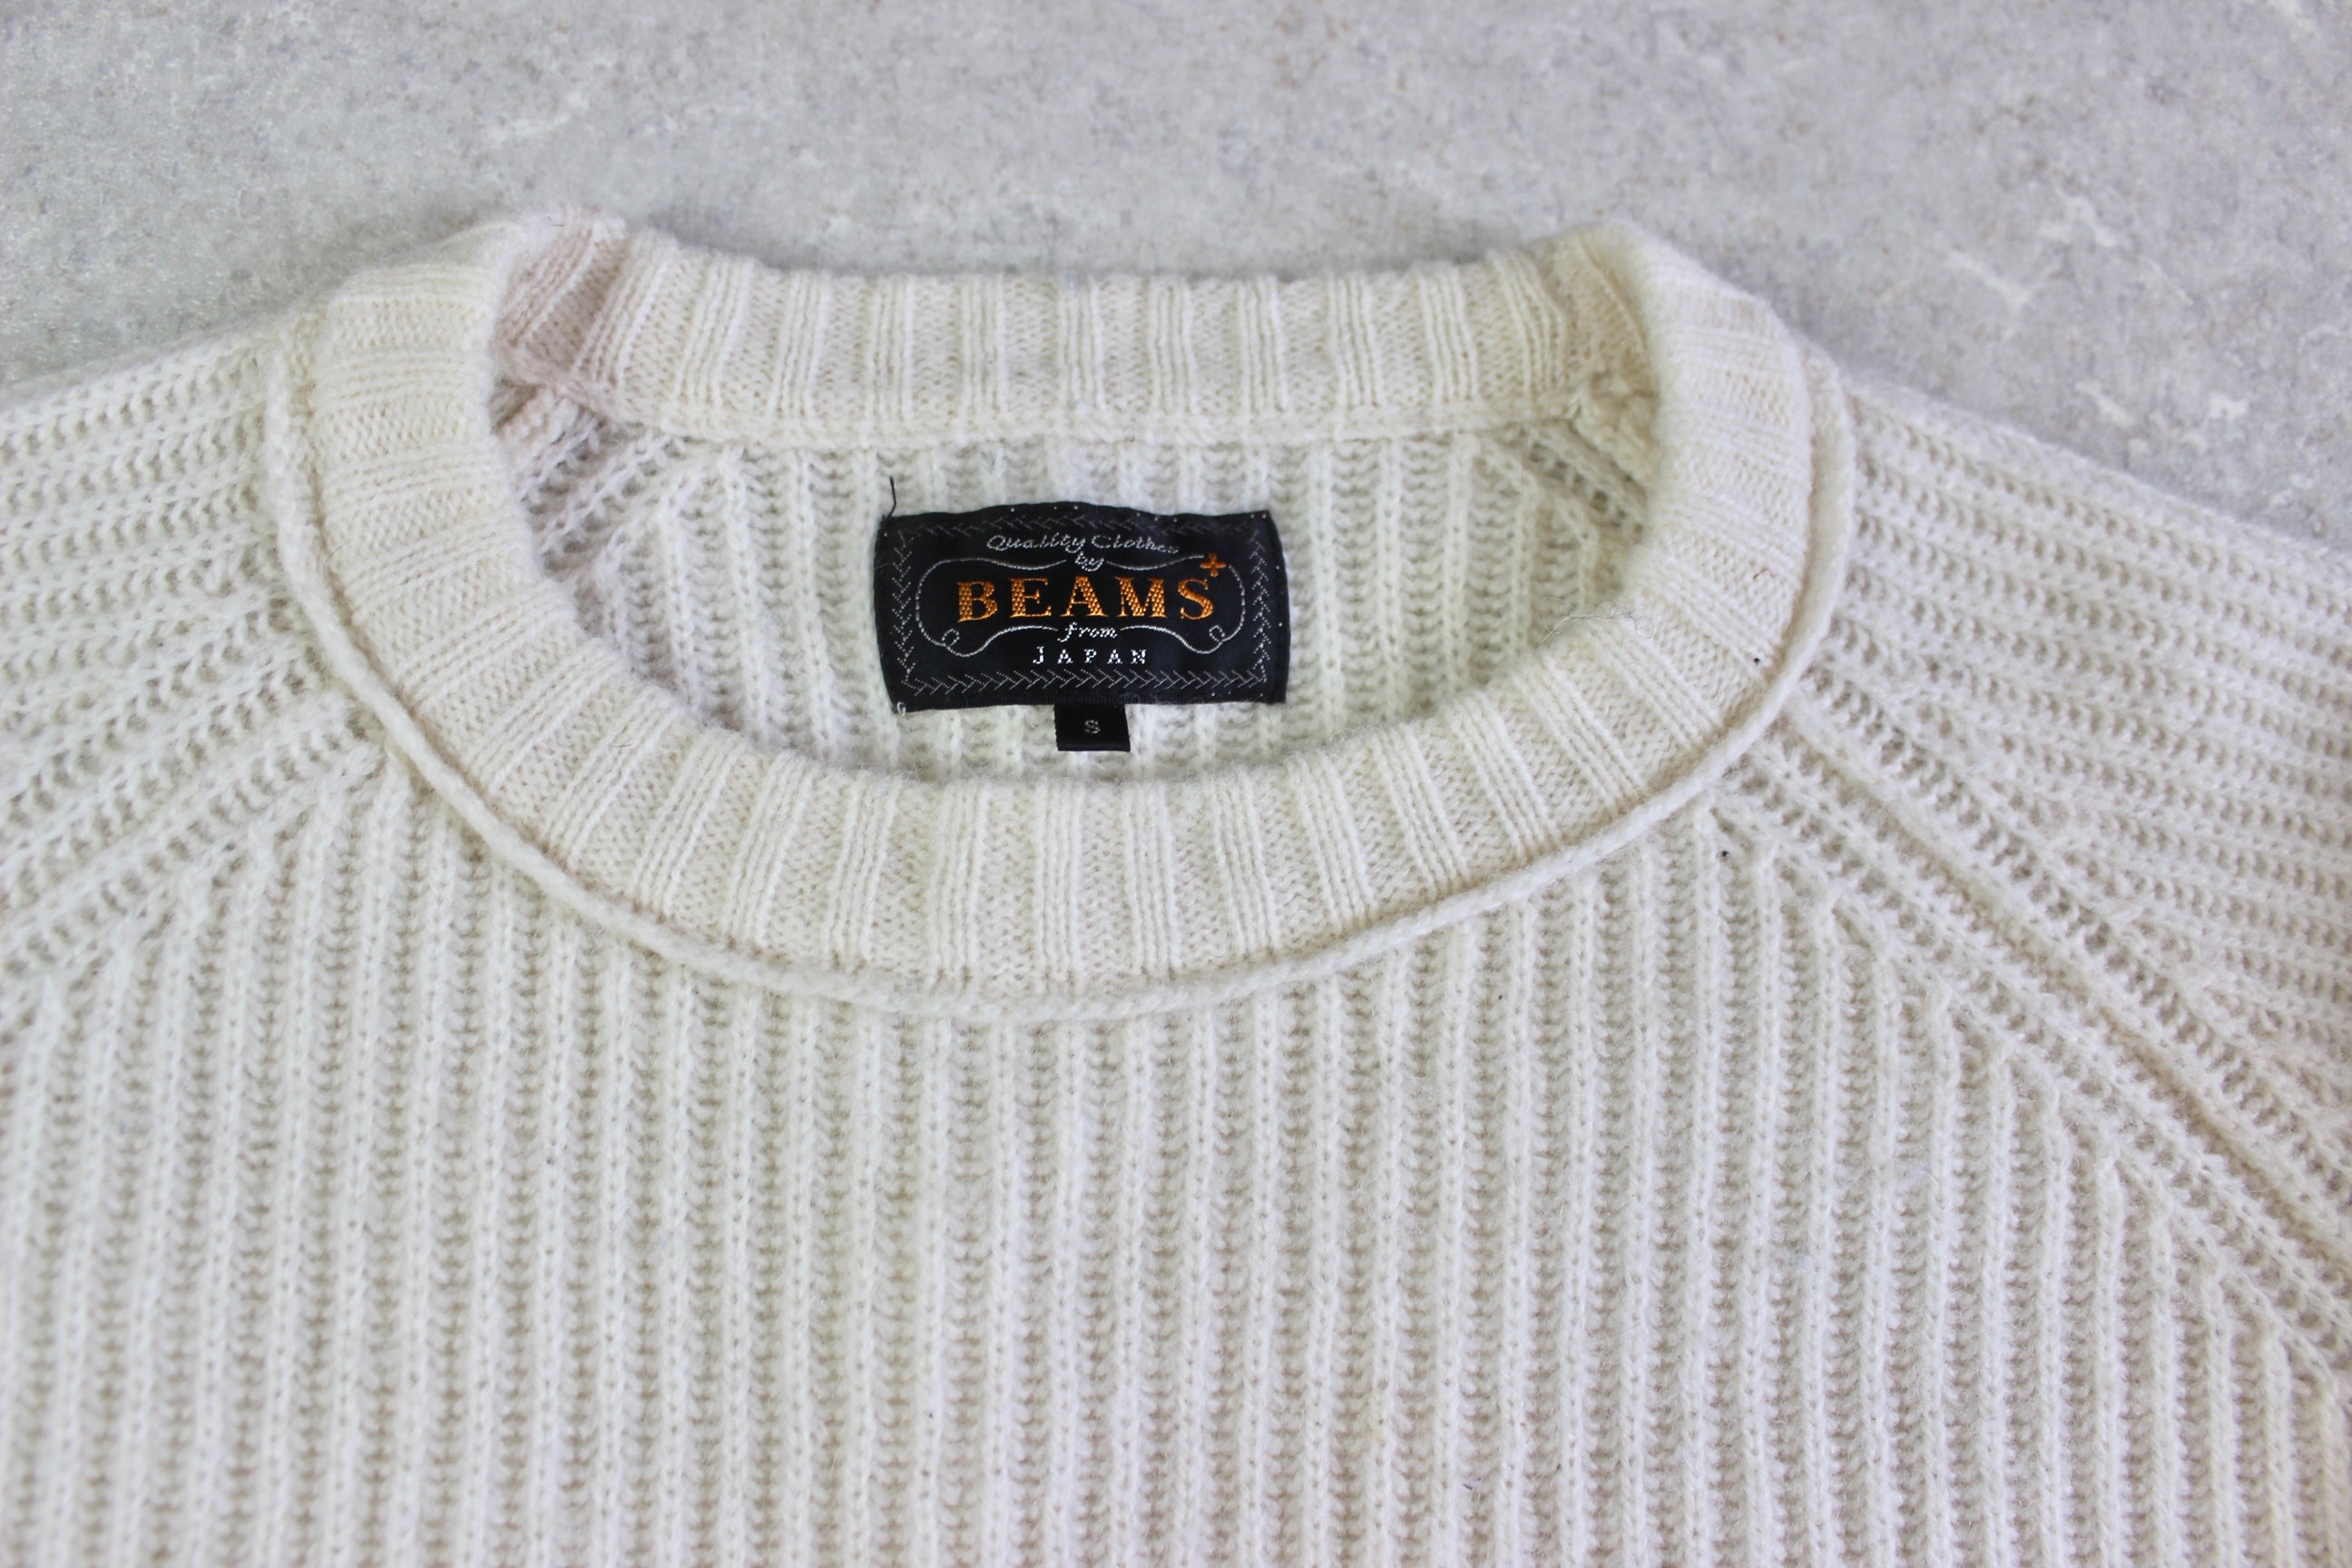 Beams Plus - Wool Knit Jumper - Cream - Small